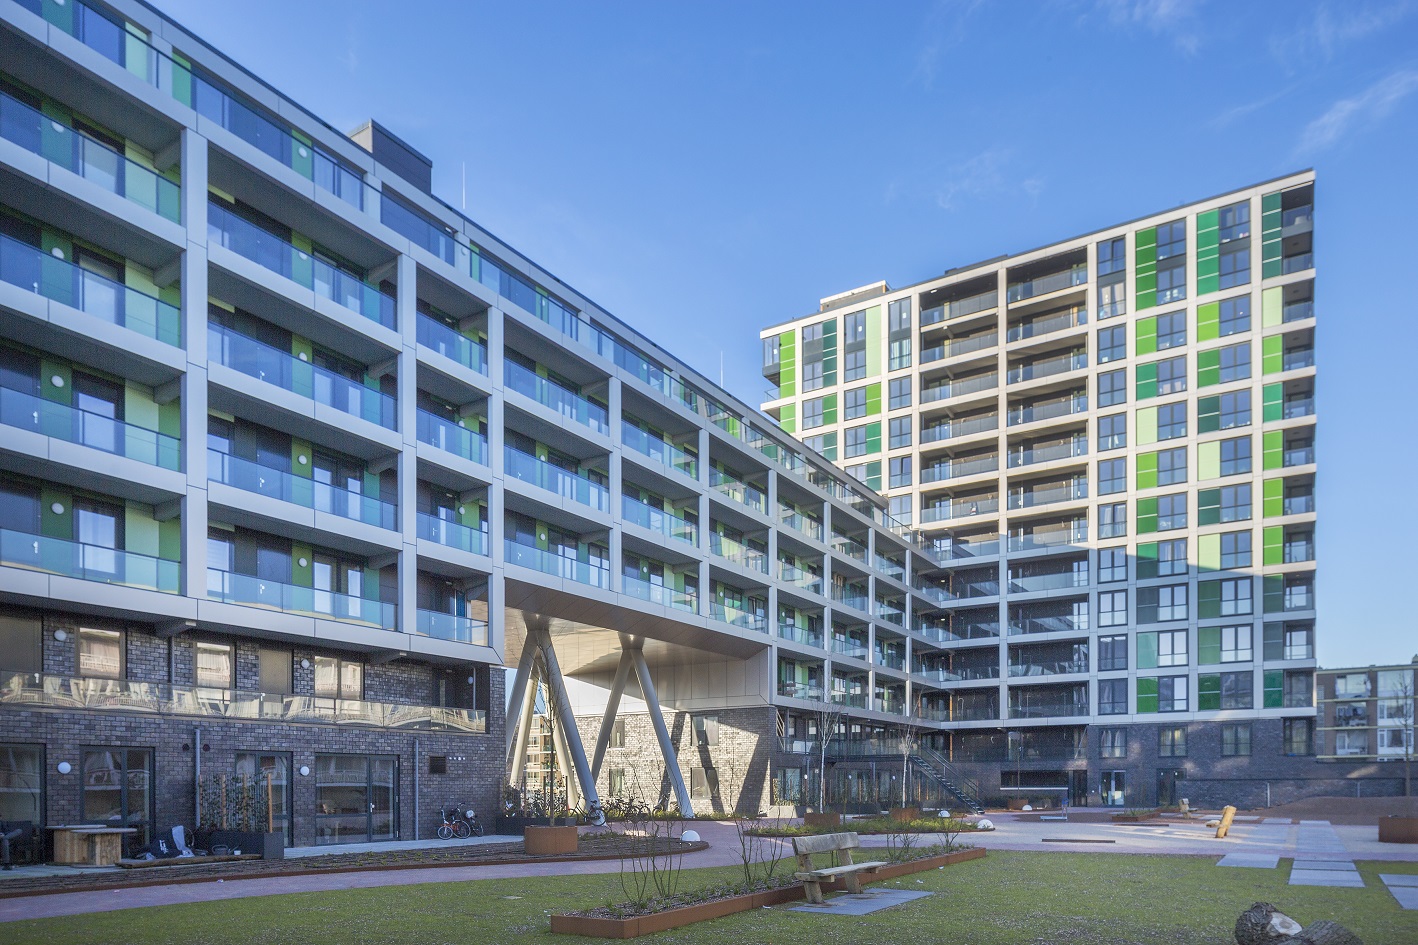 Woudt is een appartementencomplex dat bestaat uit een hoogbouw deel van 13 bouwlagen en een laagbouw deel van 7 bouwlagen. In het gebouw worden 124 drie-kamer appartementen in de vrije huur sector gerealiseerd.